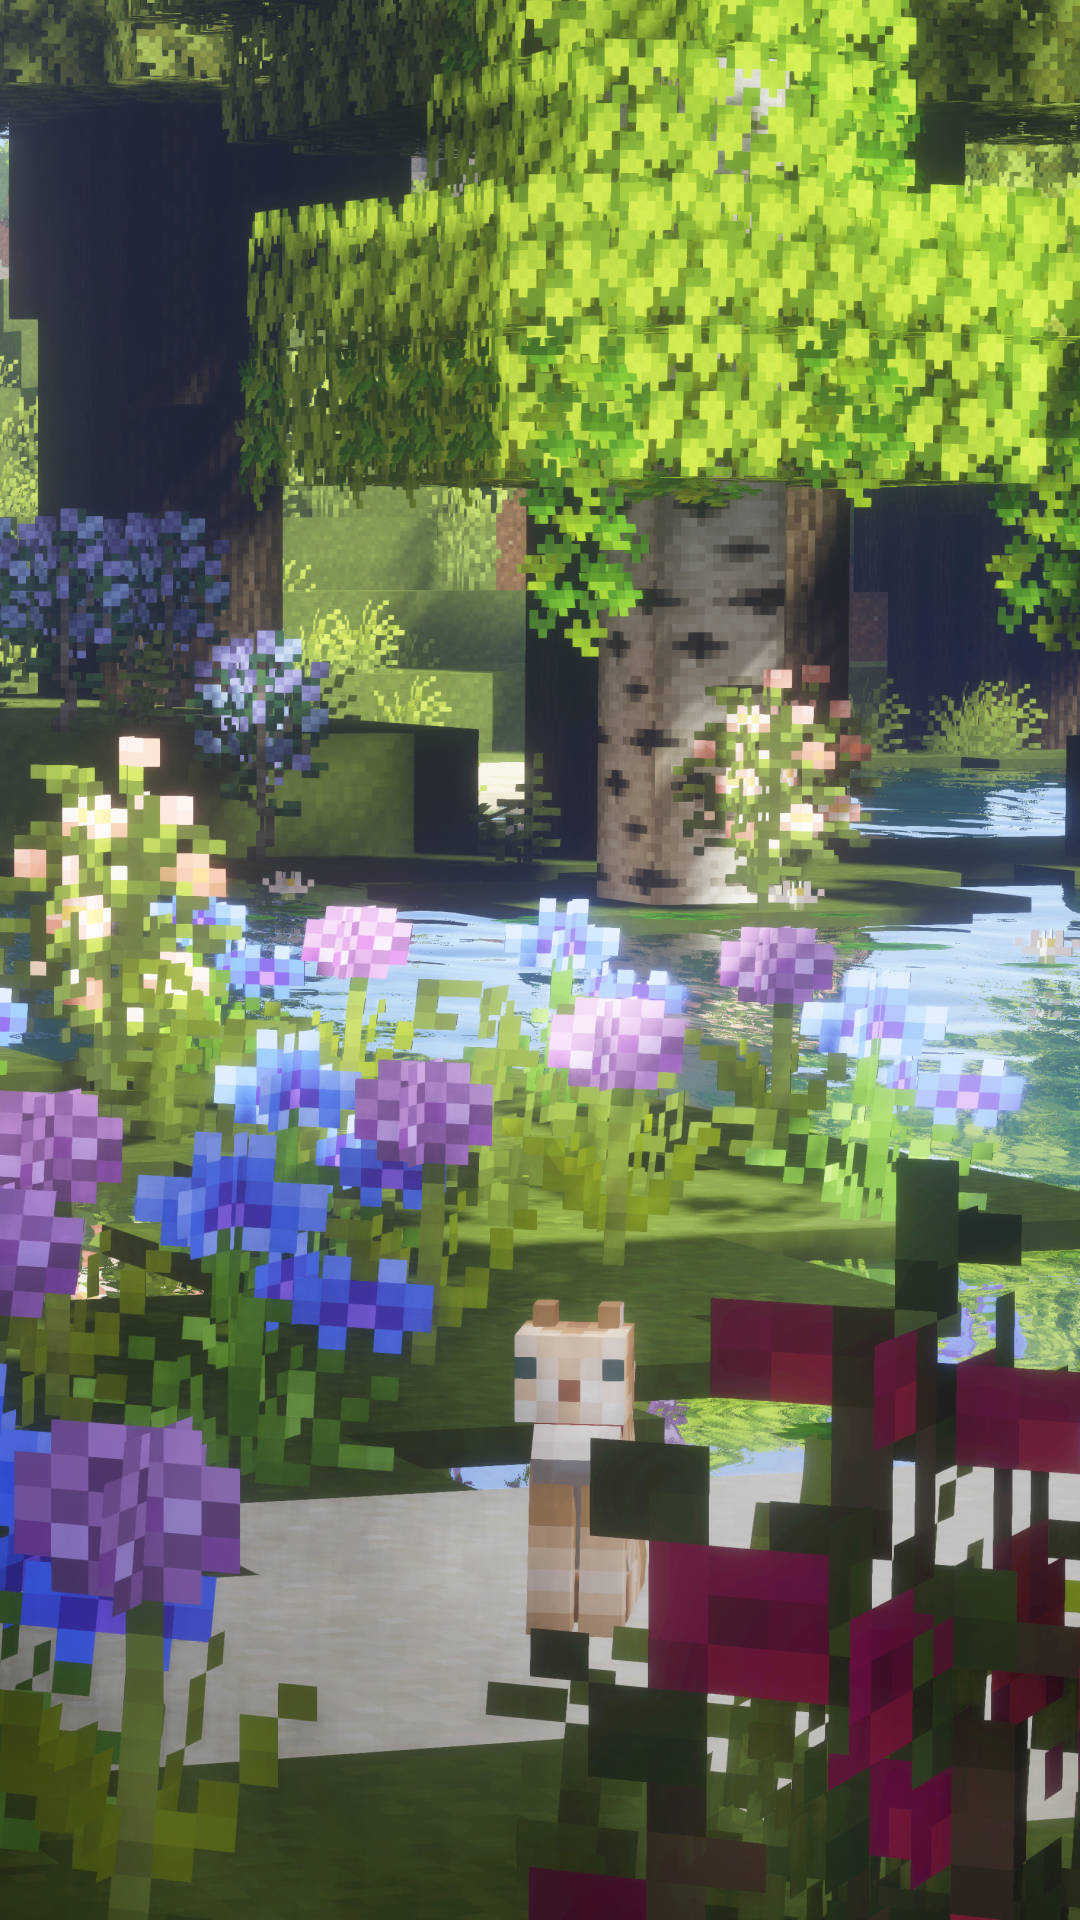 Blooming Flowers In Garden Minecraft Aesthetic Wallpaper